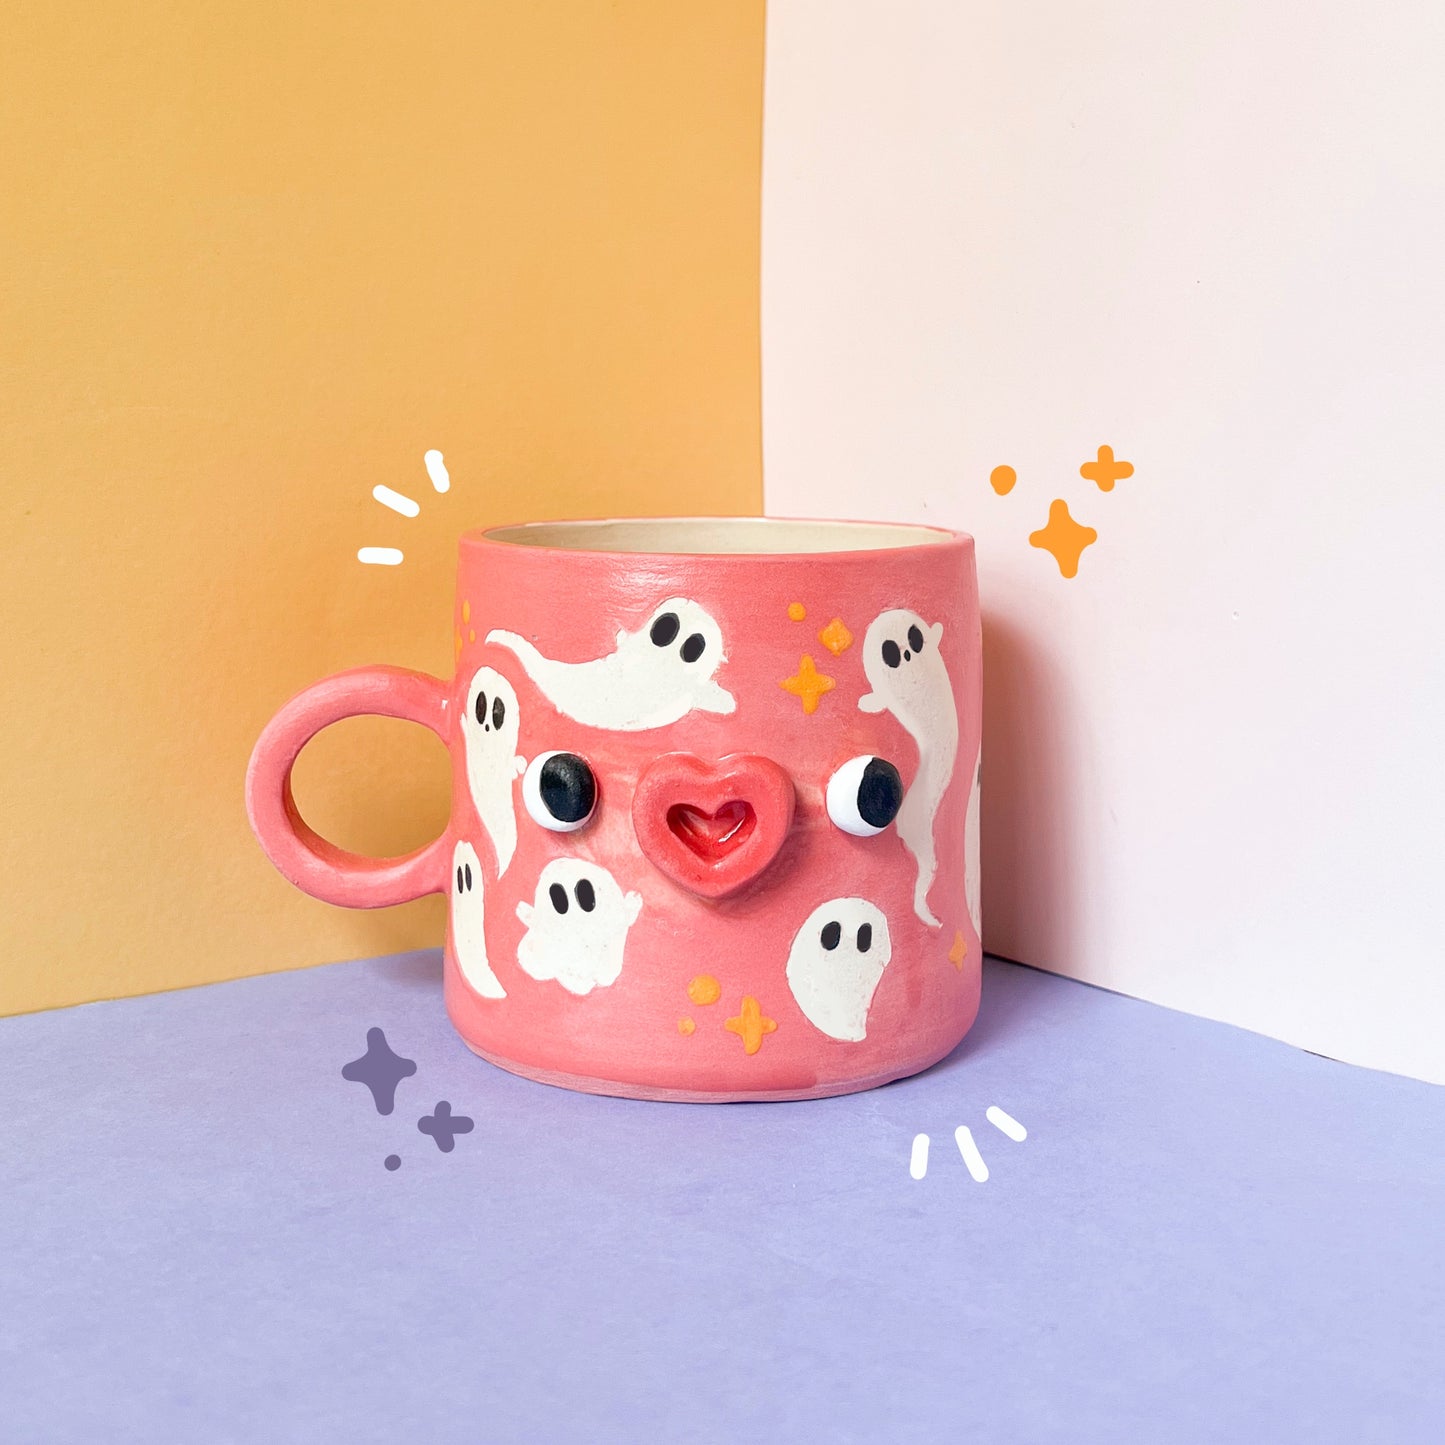 Pink ghostie mug